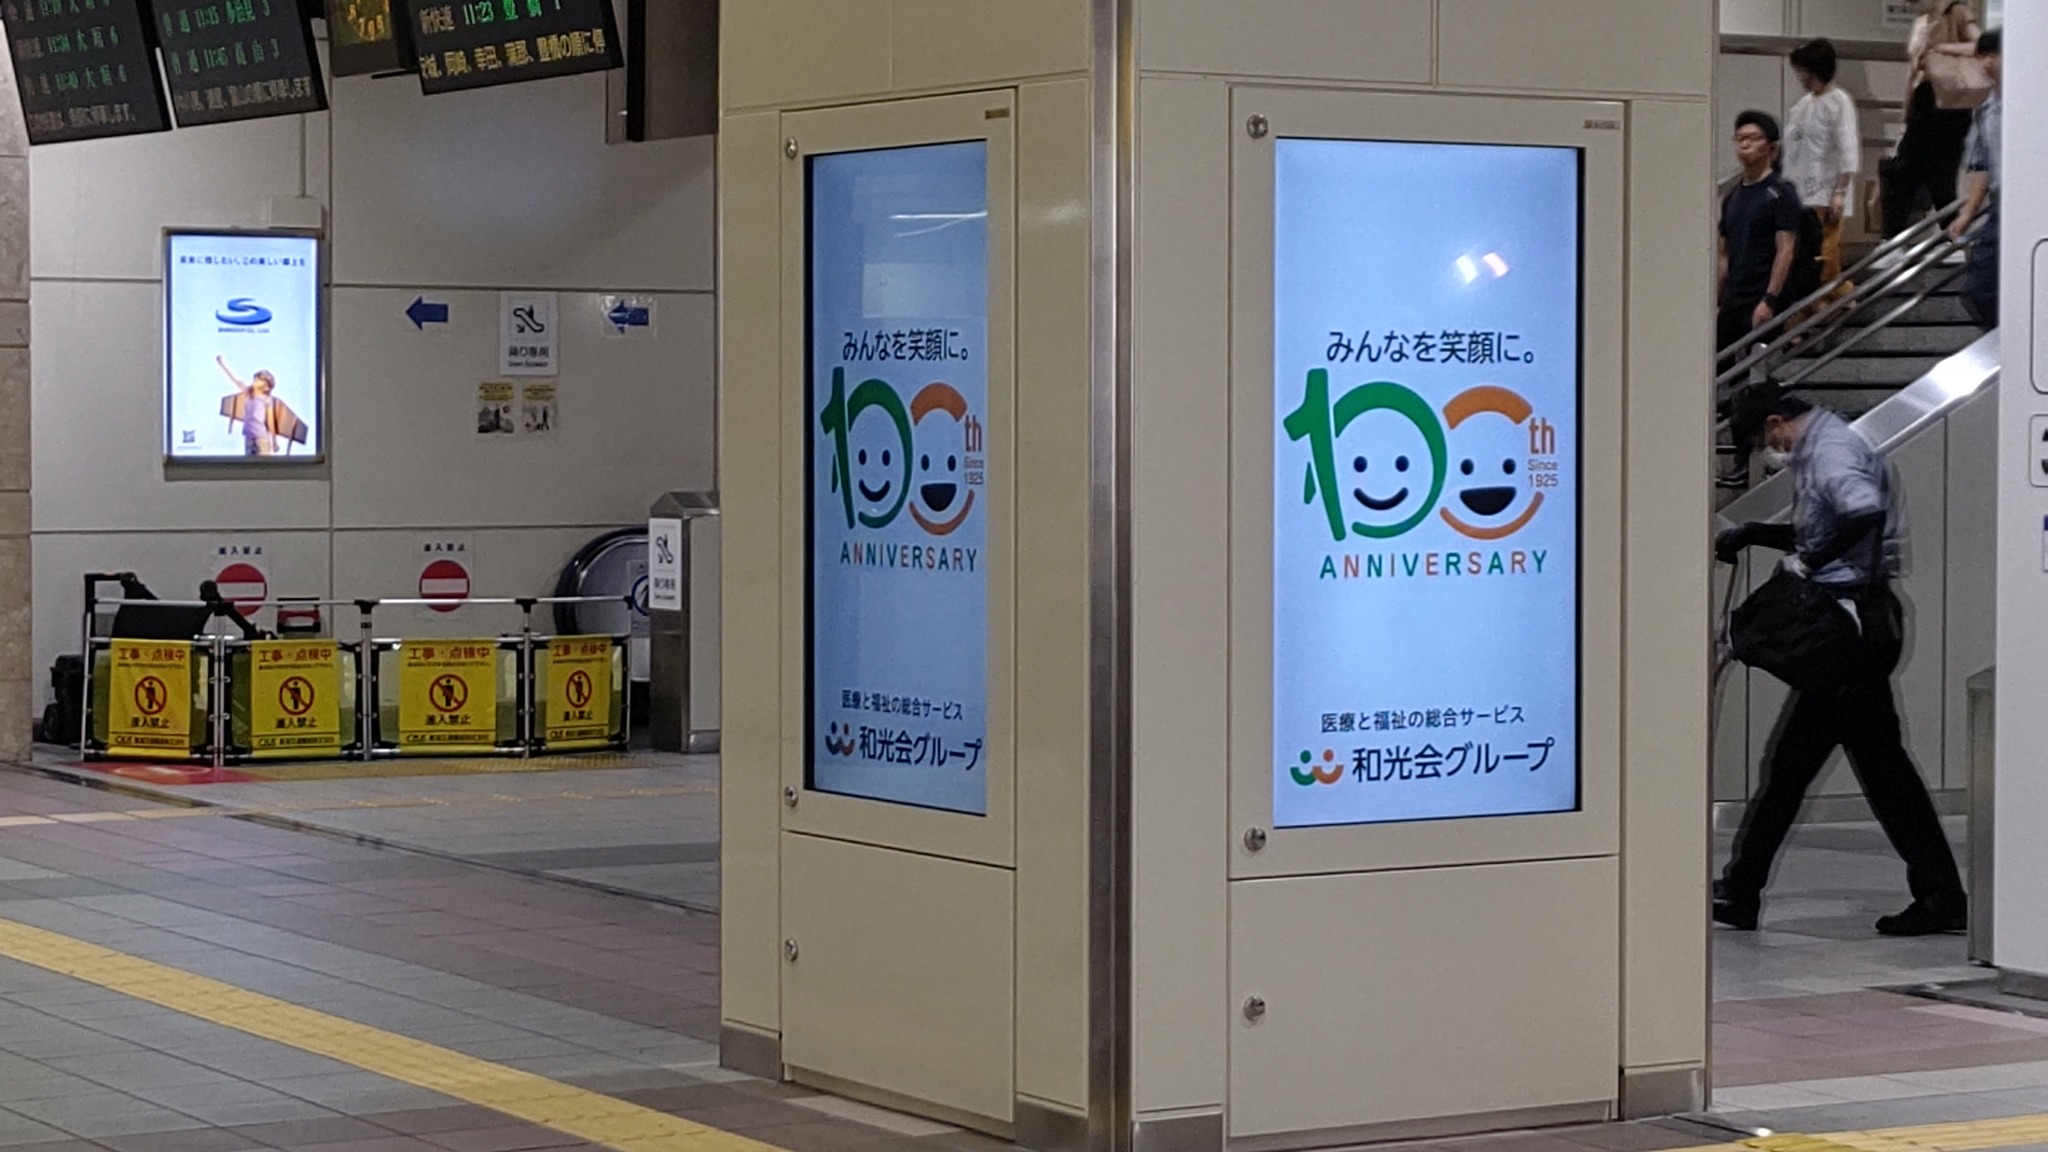 JR岐阜駅のデジタルサイネージに100周年広告を表示